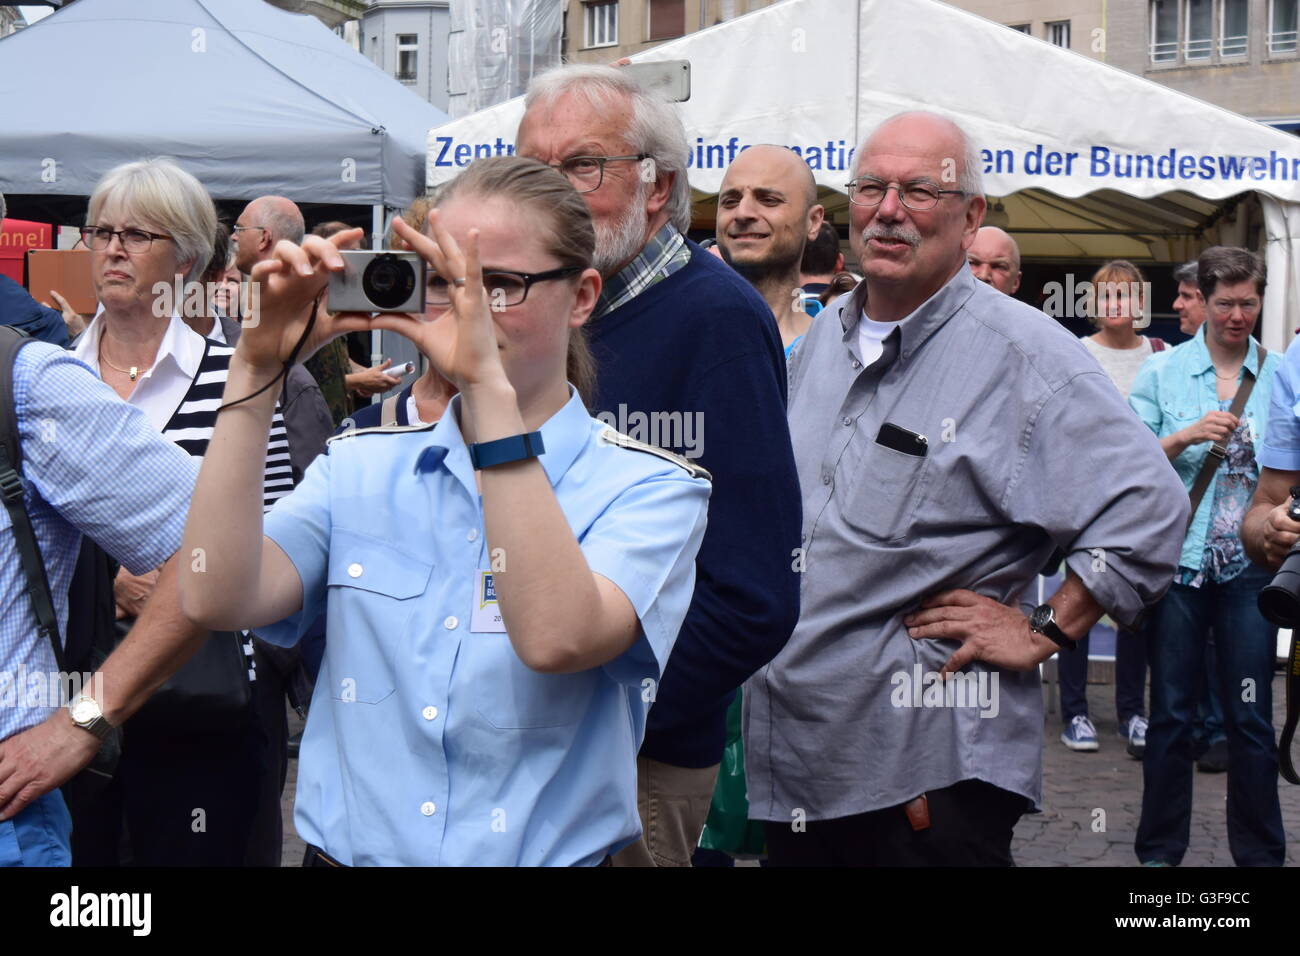 einige Zuschauer am Tag der Bundeswehr auf dem Marktplatz in Bonn, Deutschland Stockfoto